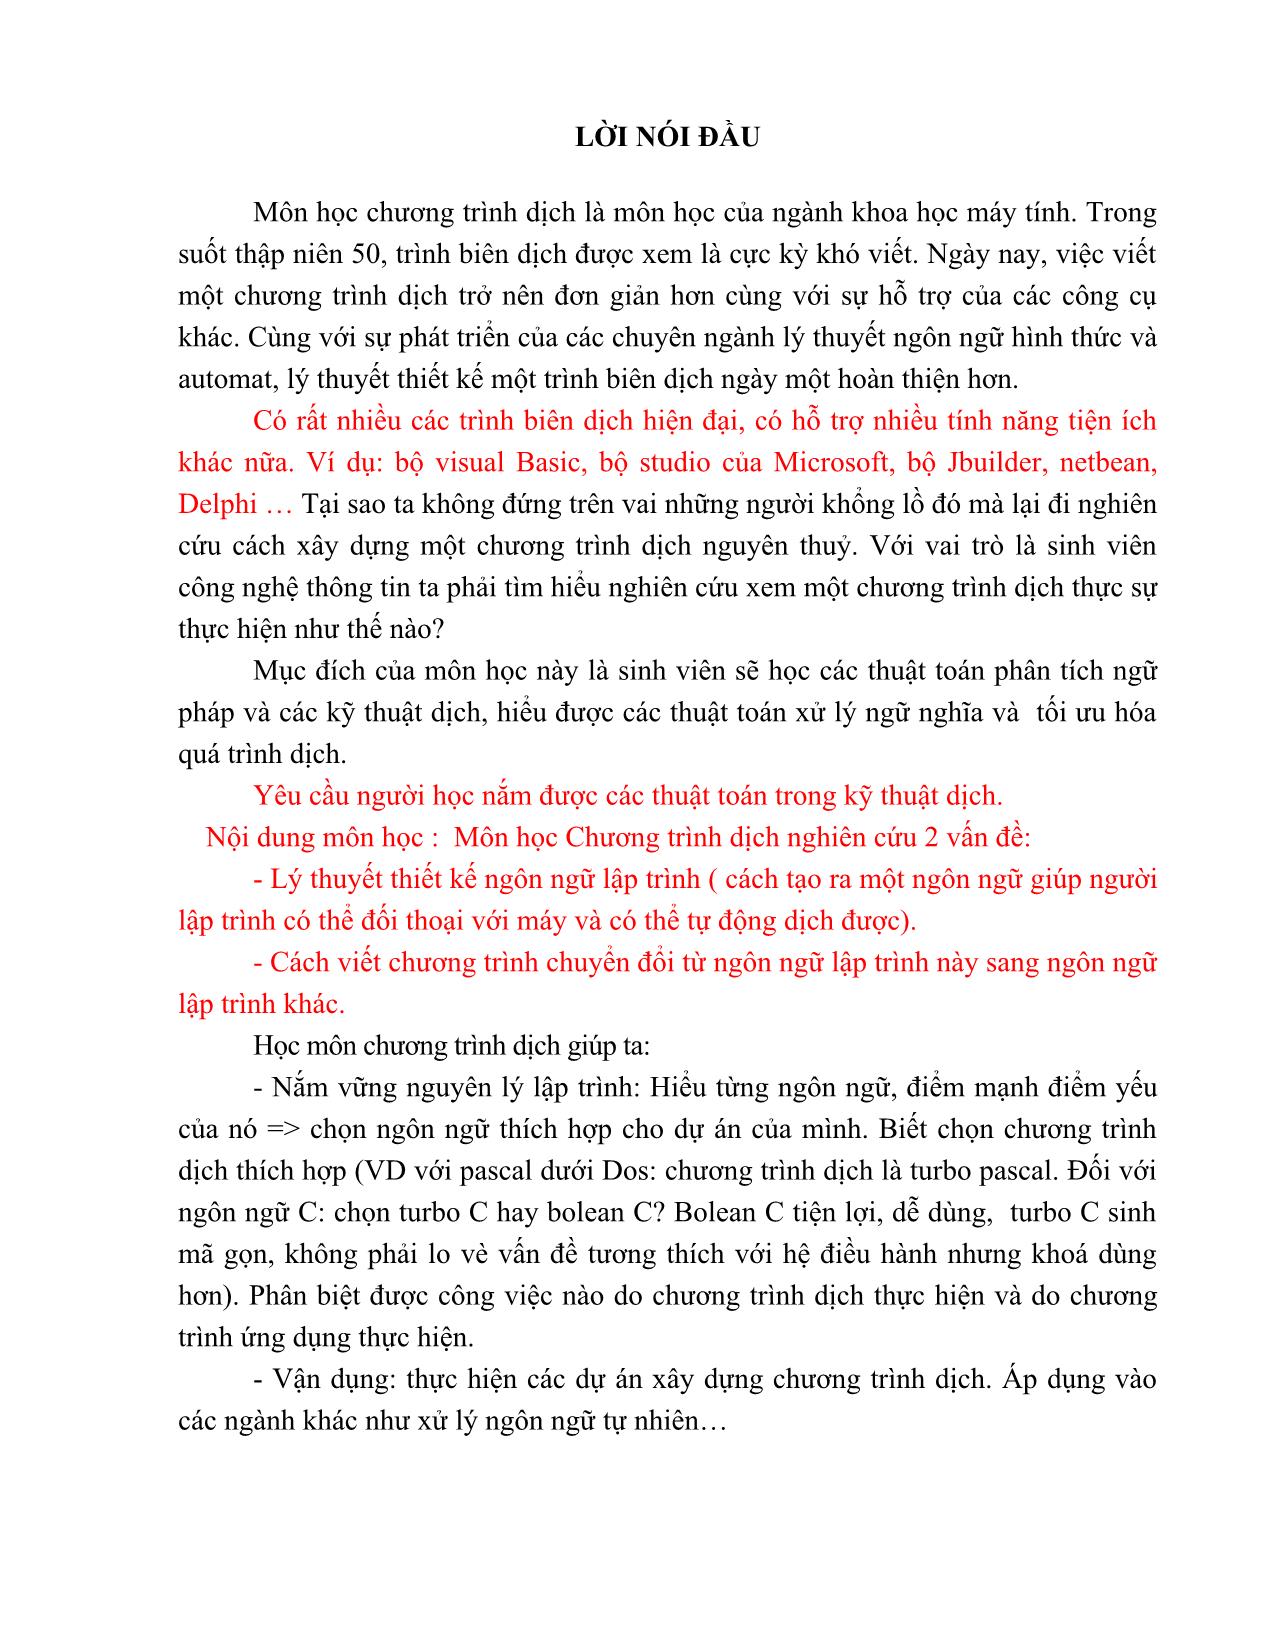 Giáo trình Chương trình dịch (Phần 1) trang 3